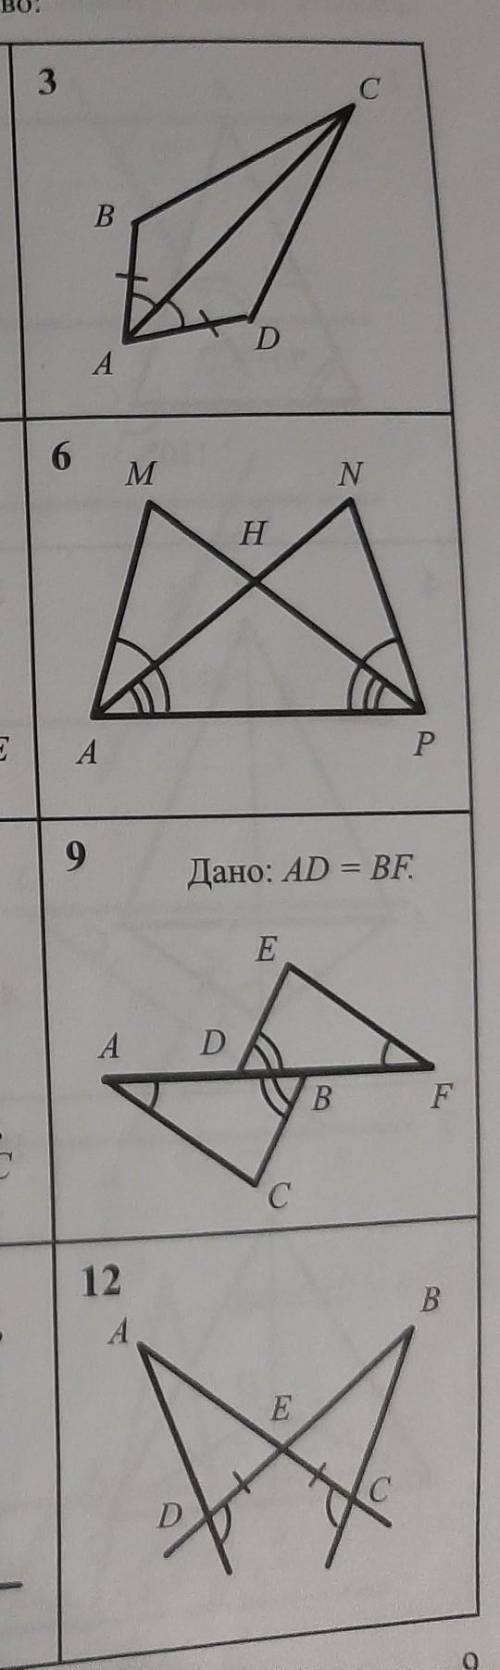 Найти пары равных треугольников и доказать их равенство ​